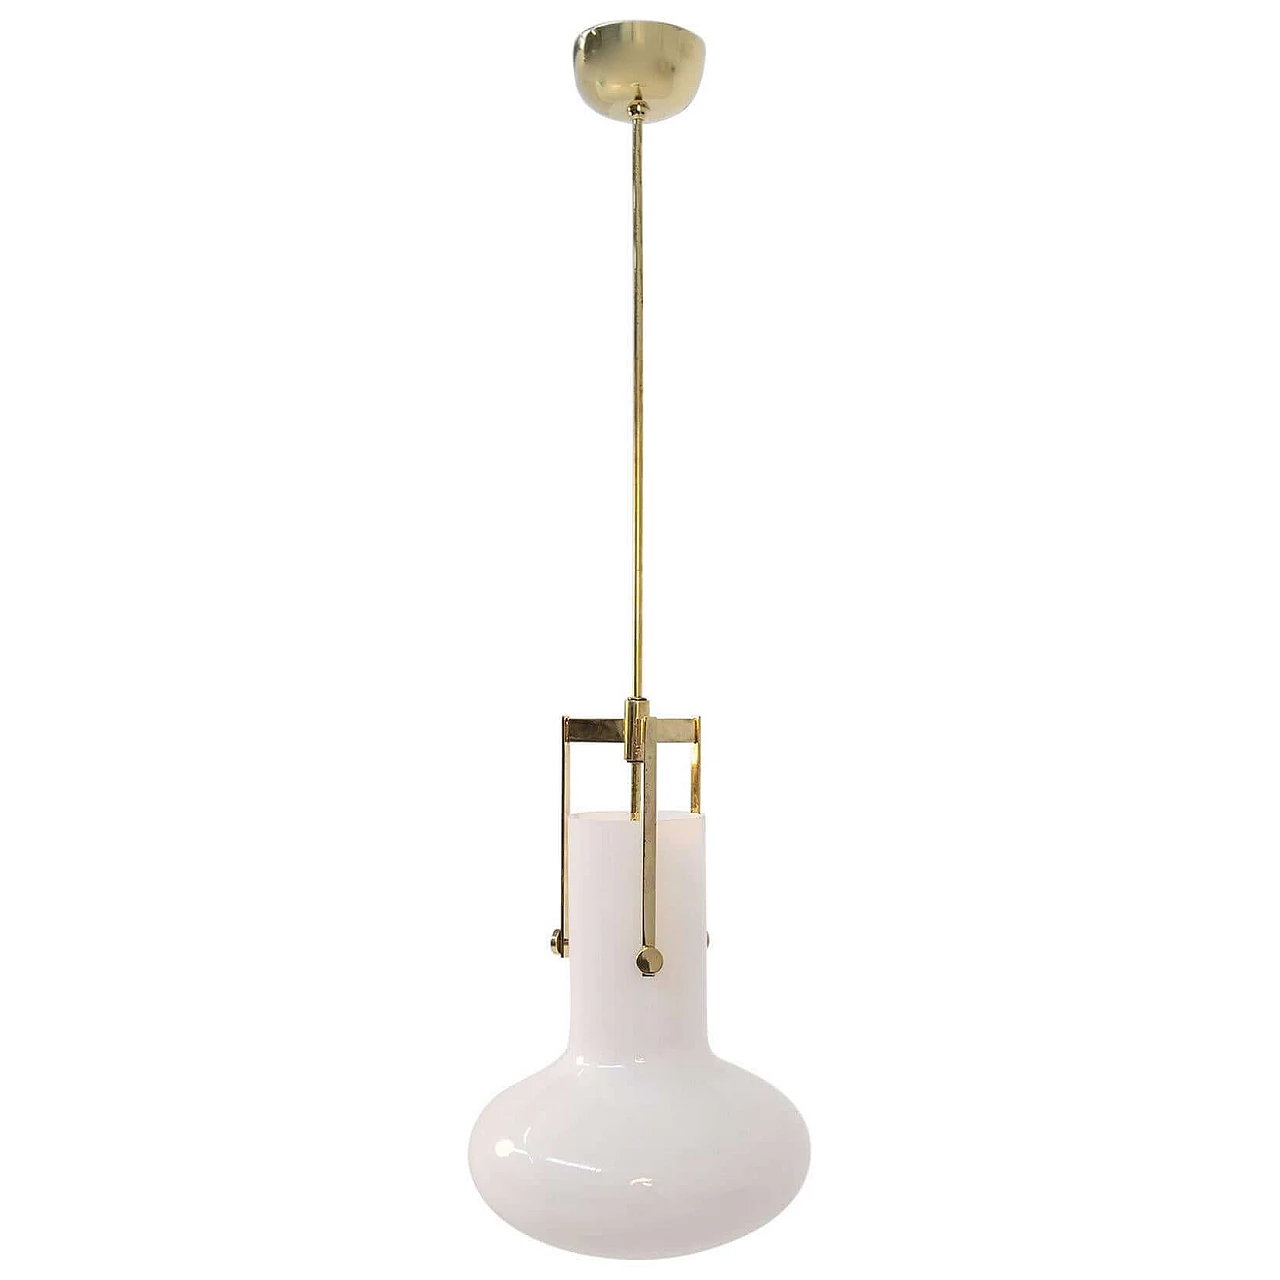 Ignazio Gardella pendant lamp for Azucena in brass and glass, 1960 1382185